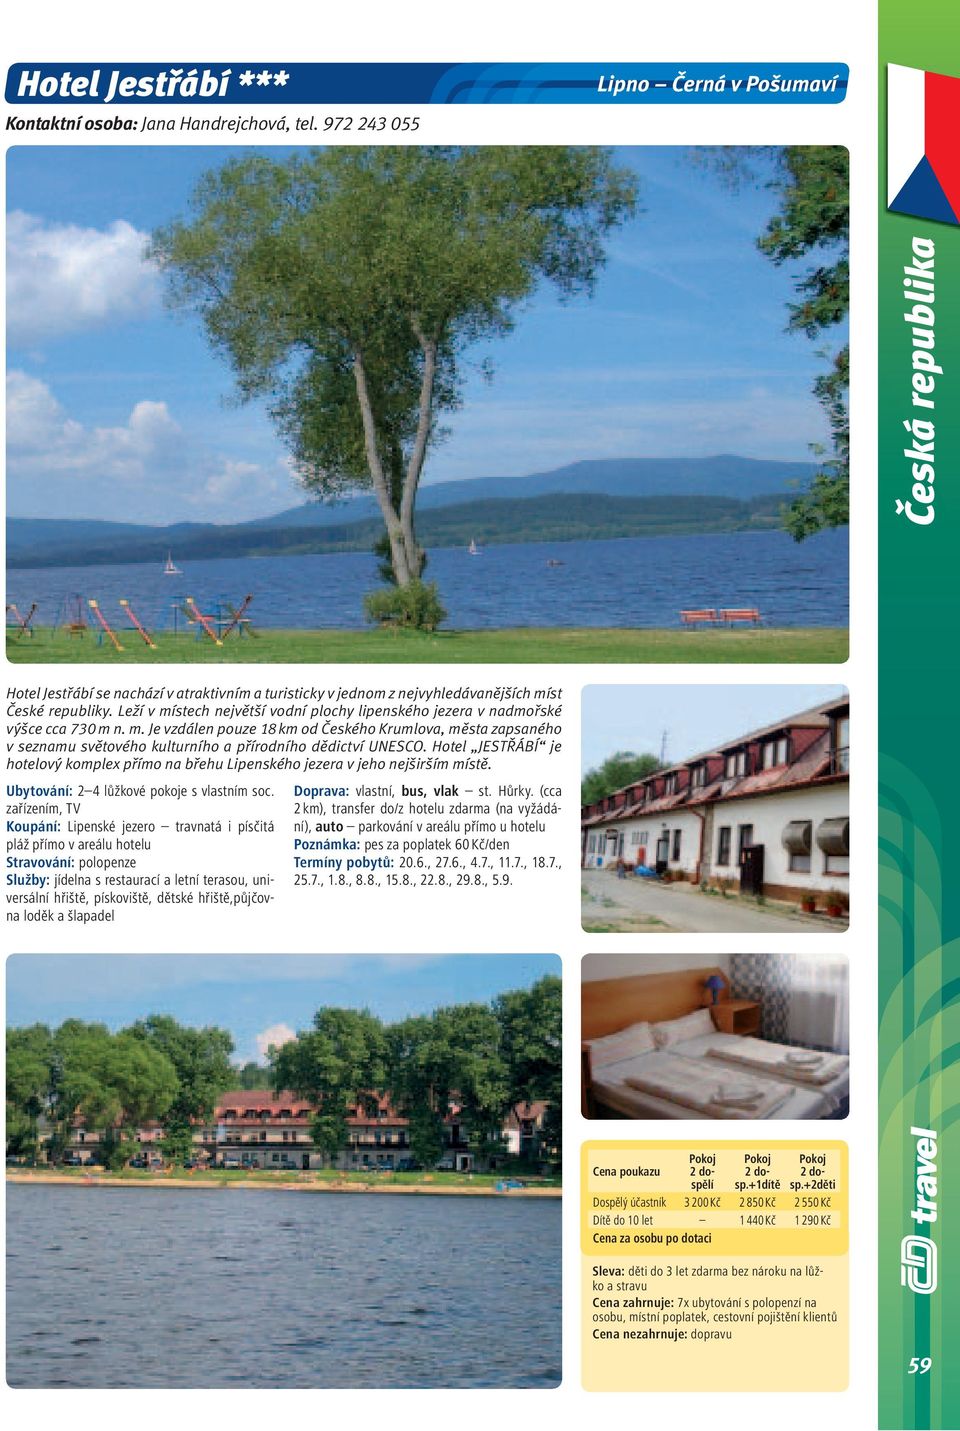 Leží v místech největší vodní plochy lipenského jezera v nadmořské výšce cca 730 m n. m. Je vzdálen pouze 18 km od Českého Krumlova, města zapsaného v seznamu světového kulturního a přírodního dědictví UNESCO.